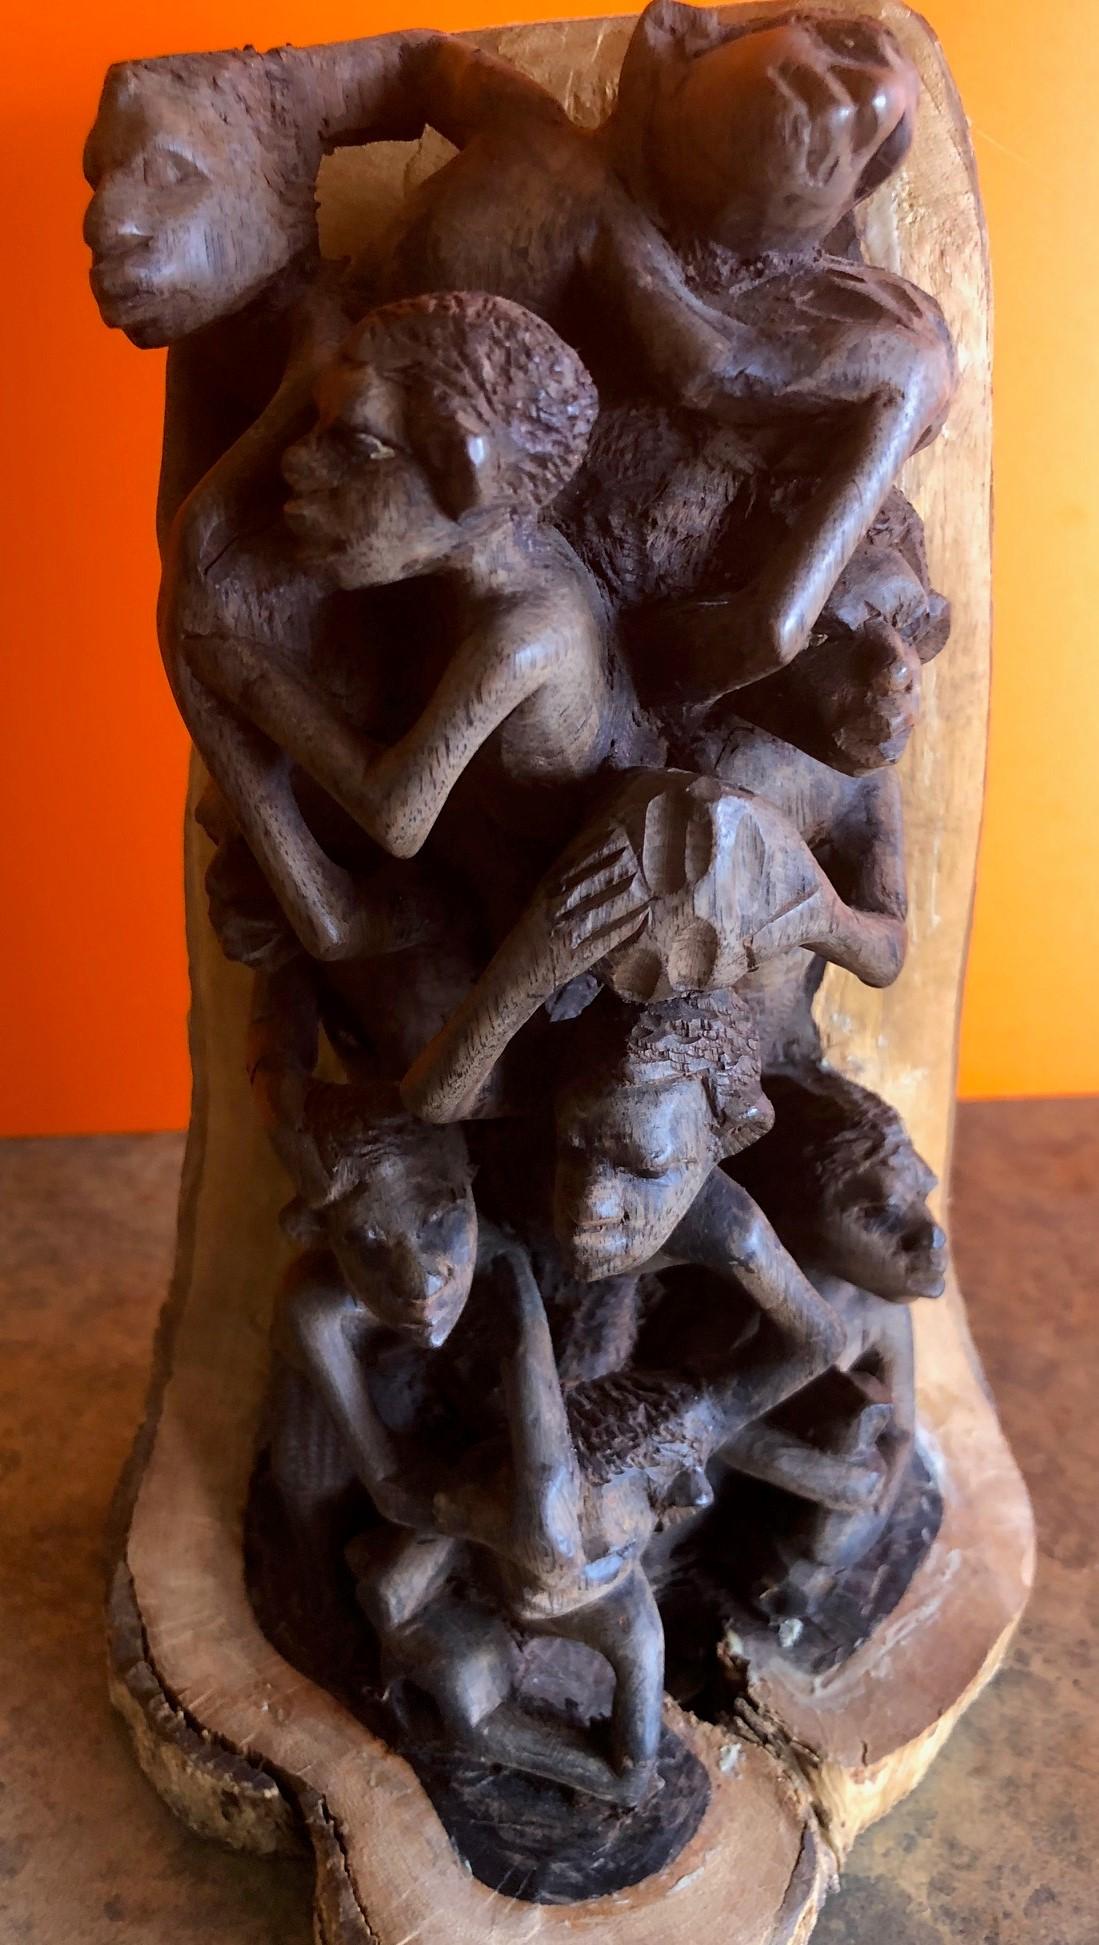 Une sculpture africaine unique représentant huit villageois au travail et au jeu. La pièce est sculptée à la main dans une branche d'arbre dont les couches internes sont en bois foncé et les couches externes en bois clair. C'est vraiment une pièce